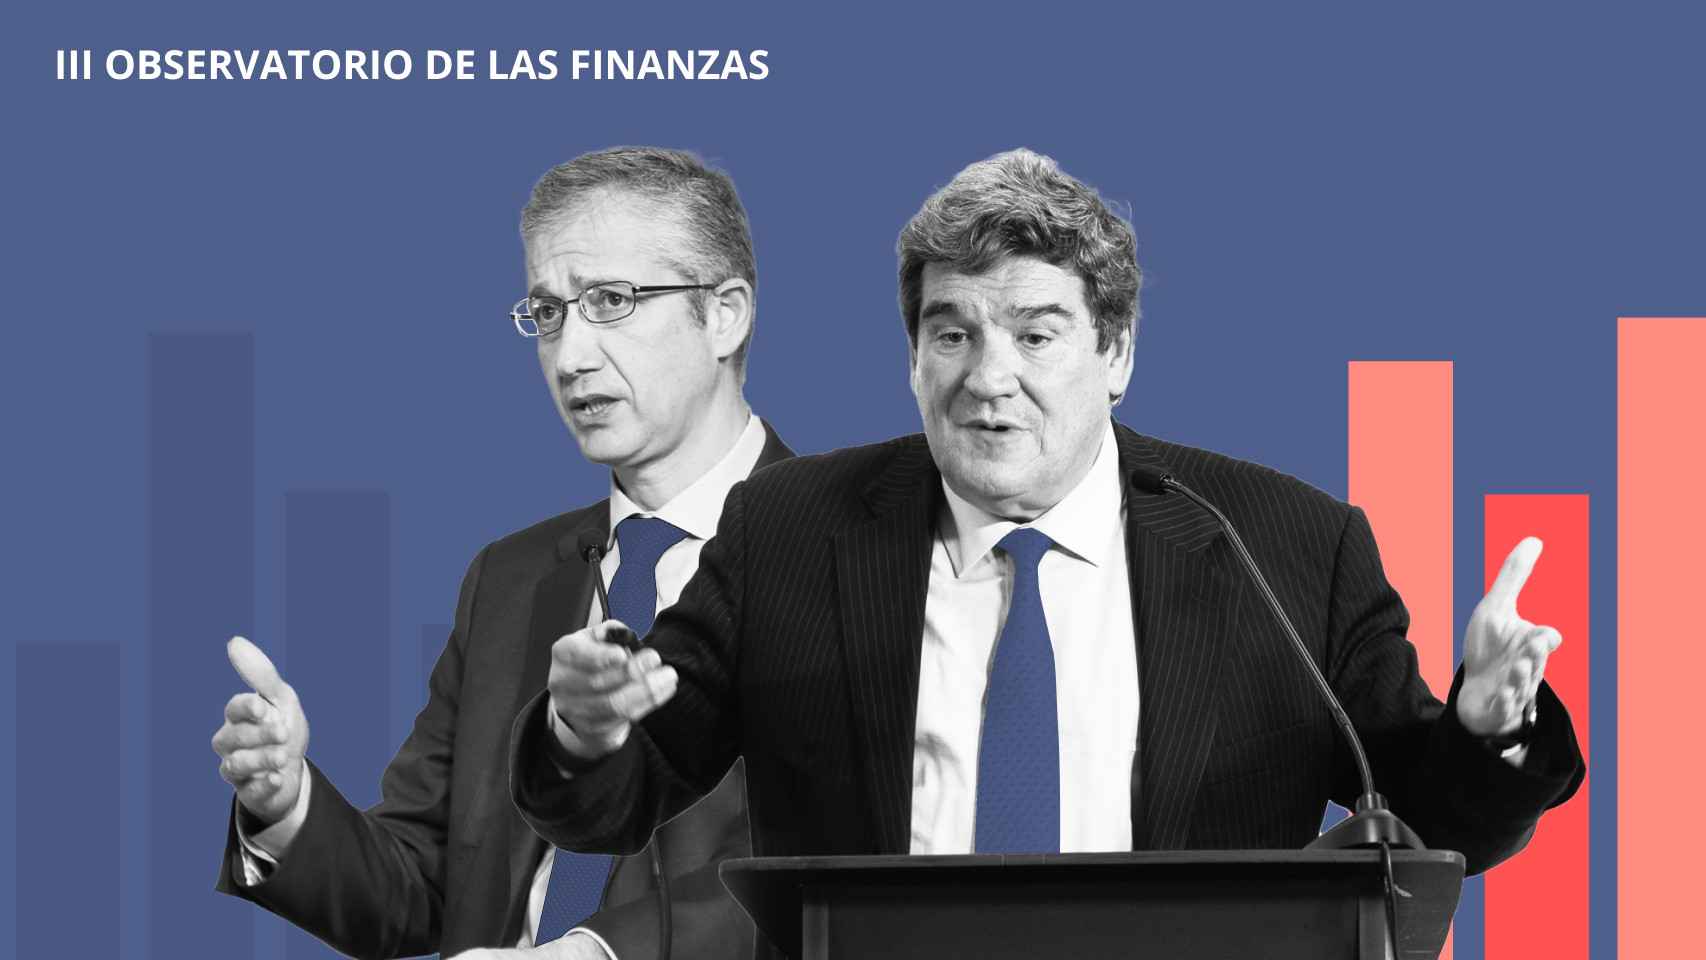 El gobernador del Banco de España, Pablo Hernández de Cos y el ministro de Seguridad Social, José Luis Escrivá, participan en el III Observatorio de las Finanzas.